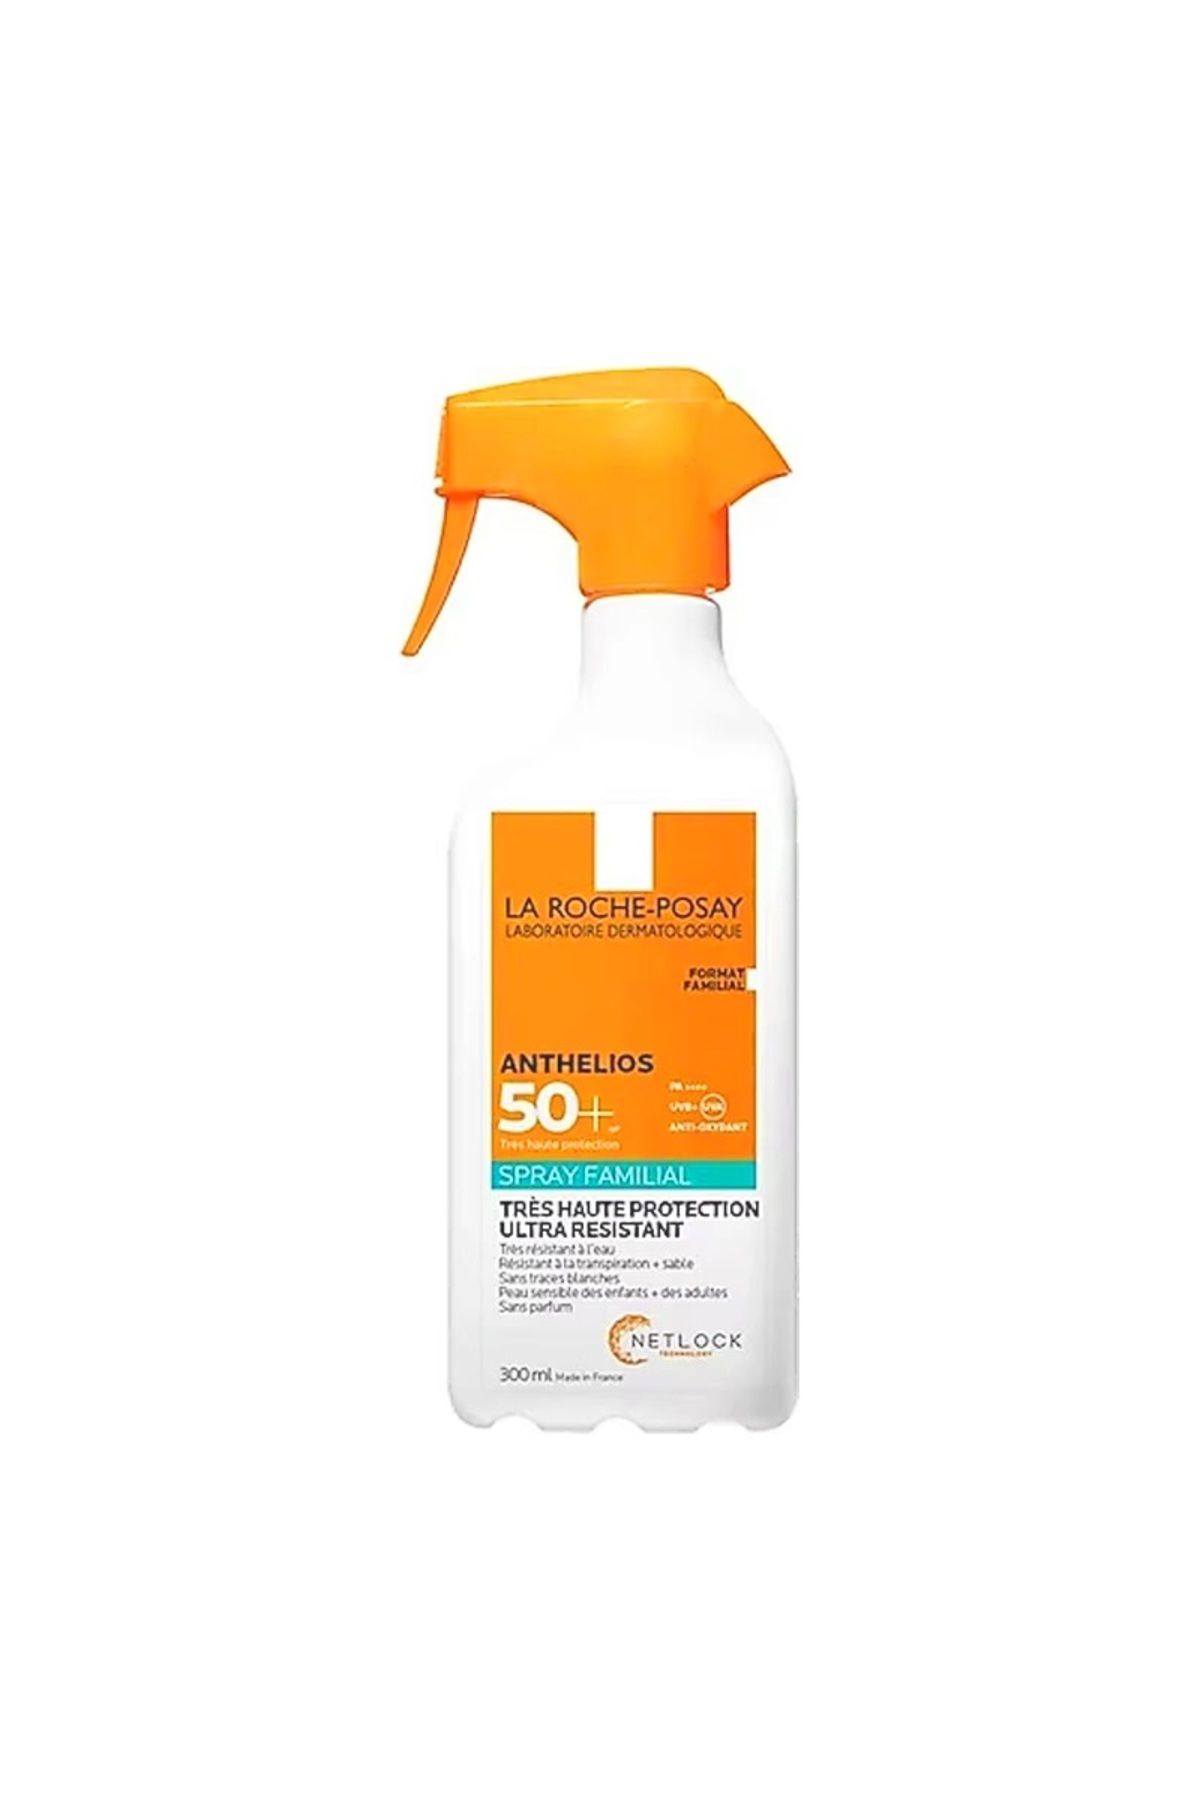 La Roche Posay Anthelios Family Spray - Ultra Suya Tere Kuma Dayanıklı SPF50 Koruyucu Vücut Güneş Spreyi 300 ml